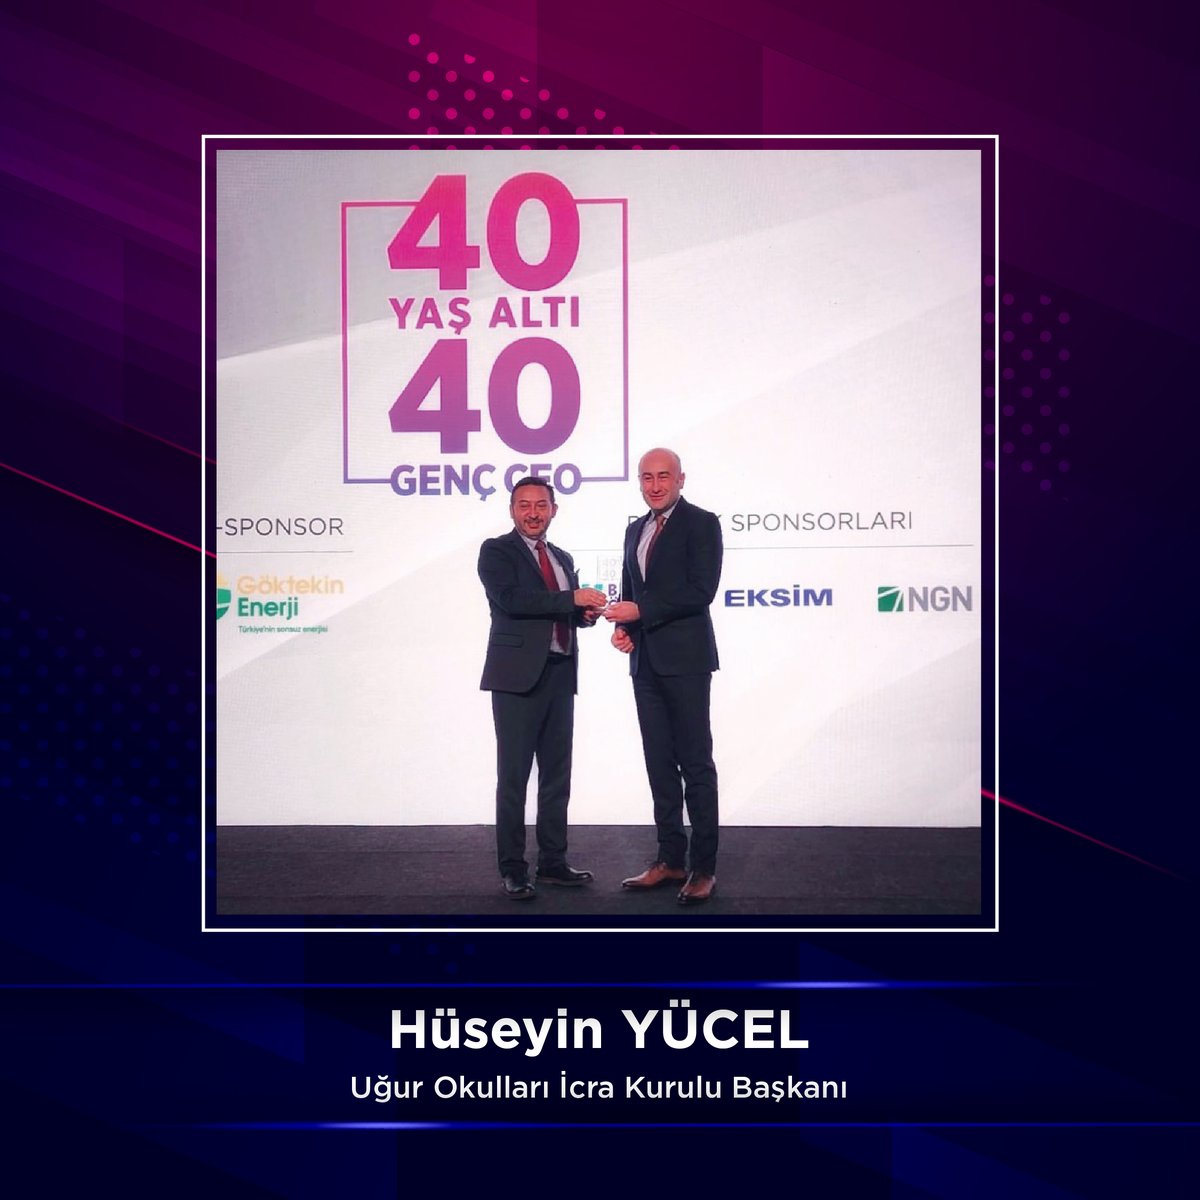 İcra Kurulu Başkanımız Sayın Hüseyin Yücel Ekonomist Dergisi'nin düzenlediği araştırmada Türkiye'nin 40 Yaş Altı 40 Genç CEO'su arasında yer aldı. 👏🏆 #UğurluOlmak